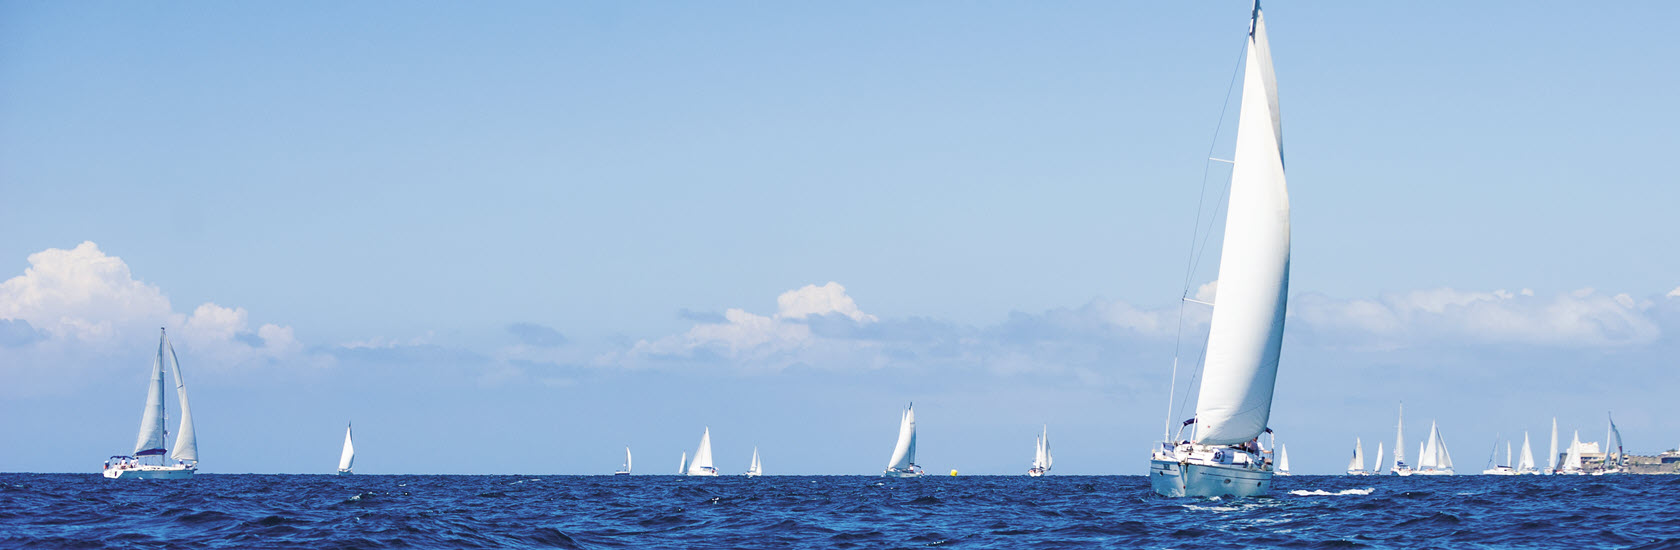 Sailboats on the sea